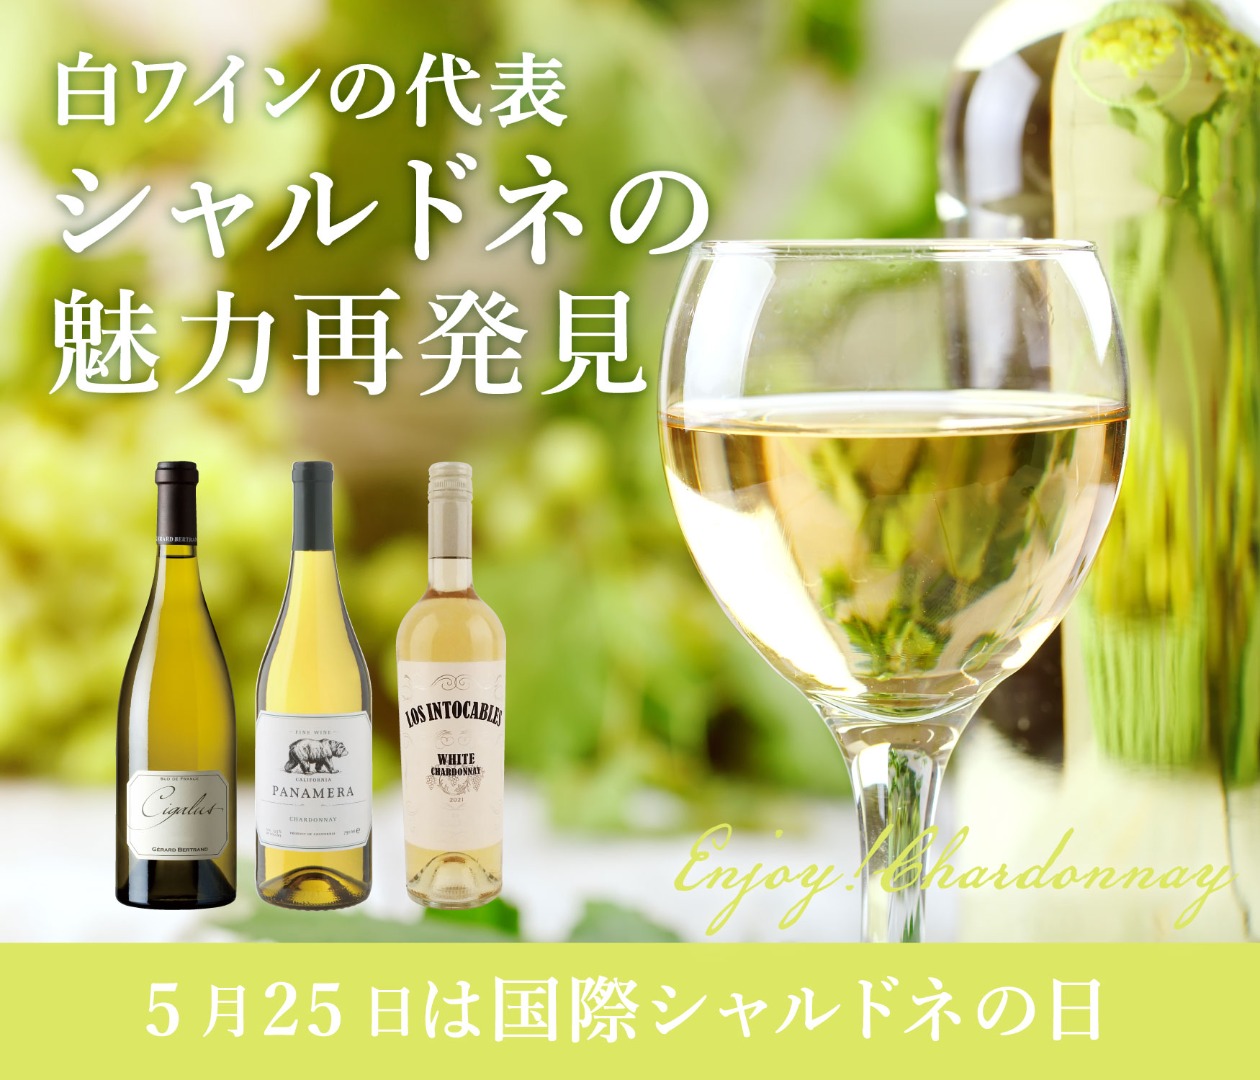 シャルドネのワイン商品一覧 | ピーロート・ジャパン ハイエンド・高級